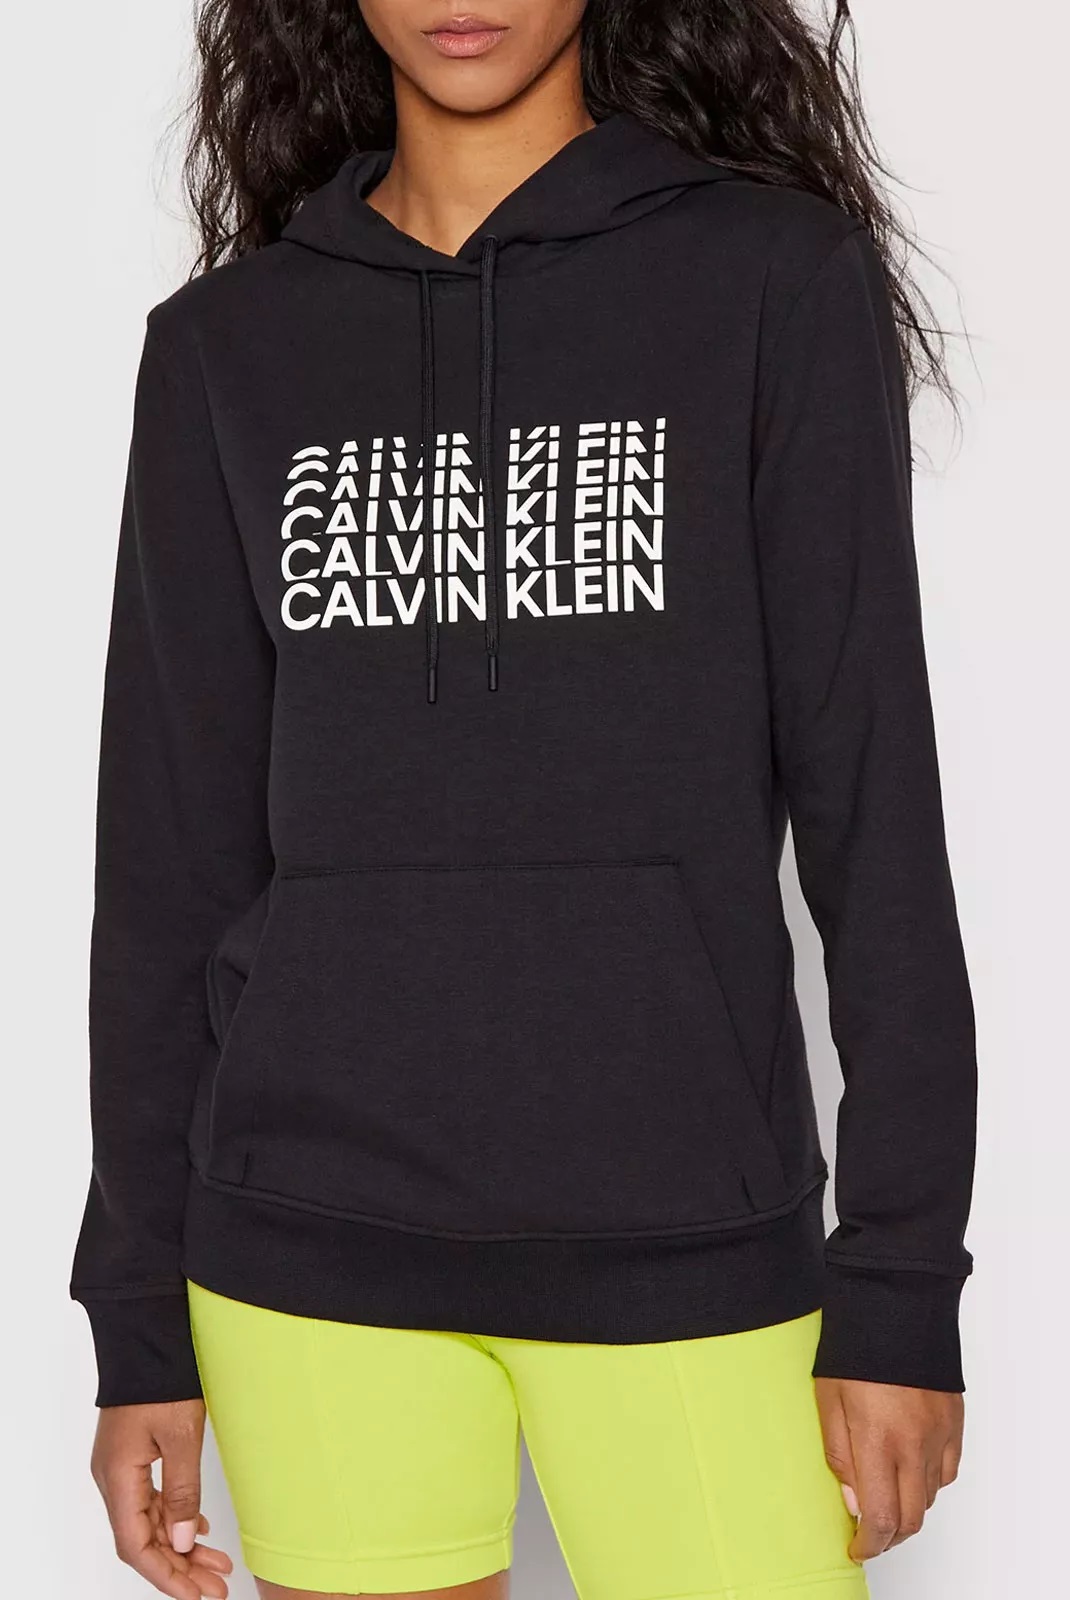 Calvin Klein dámská mikina s kapucí černá Velikost: XS